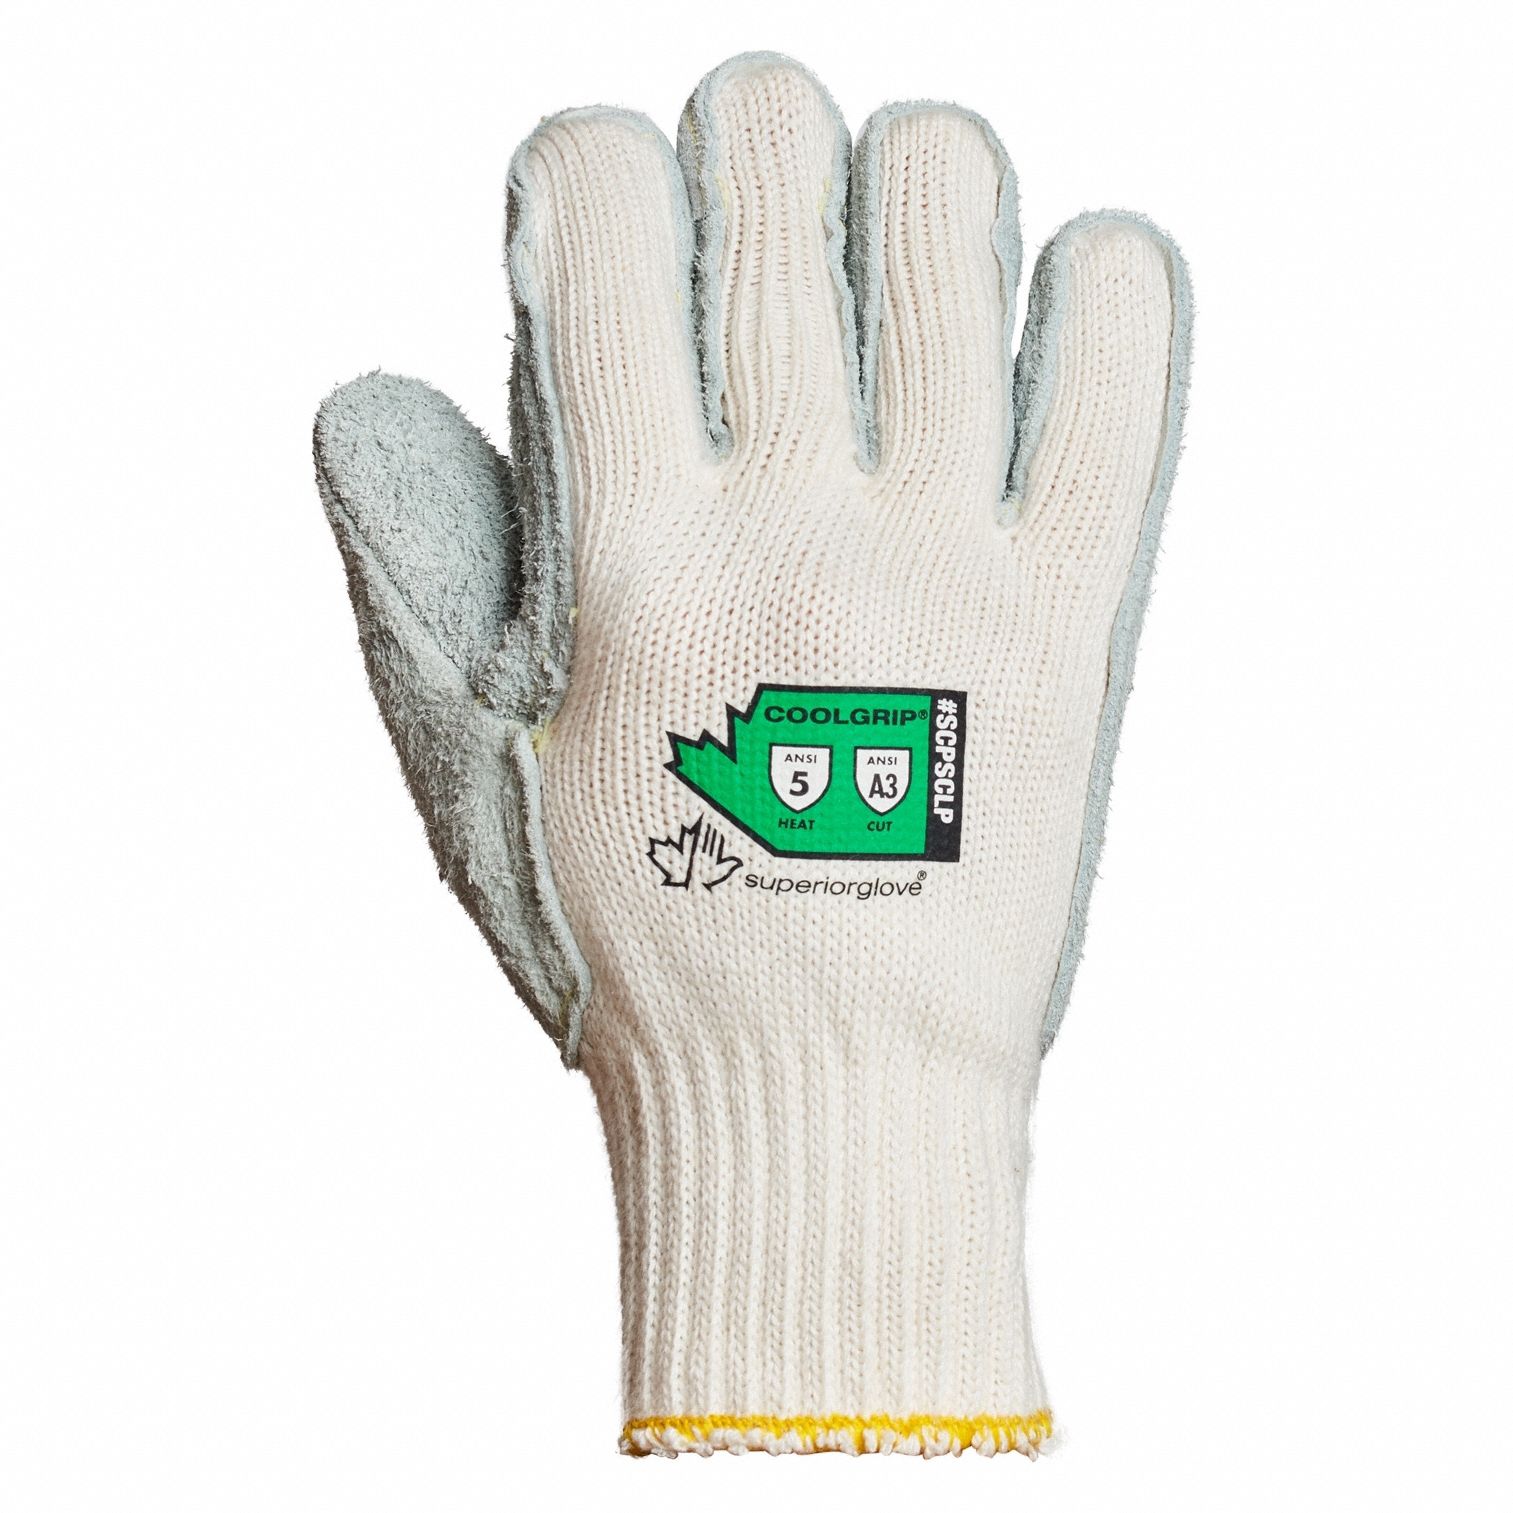 Knit Gloves: 12 PK